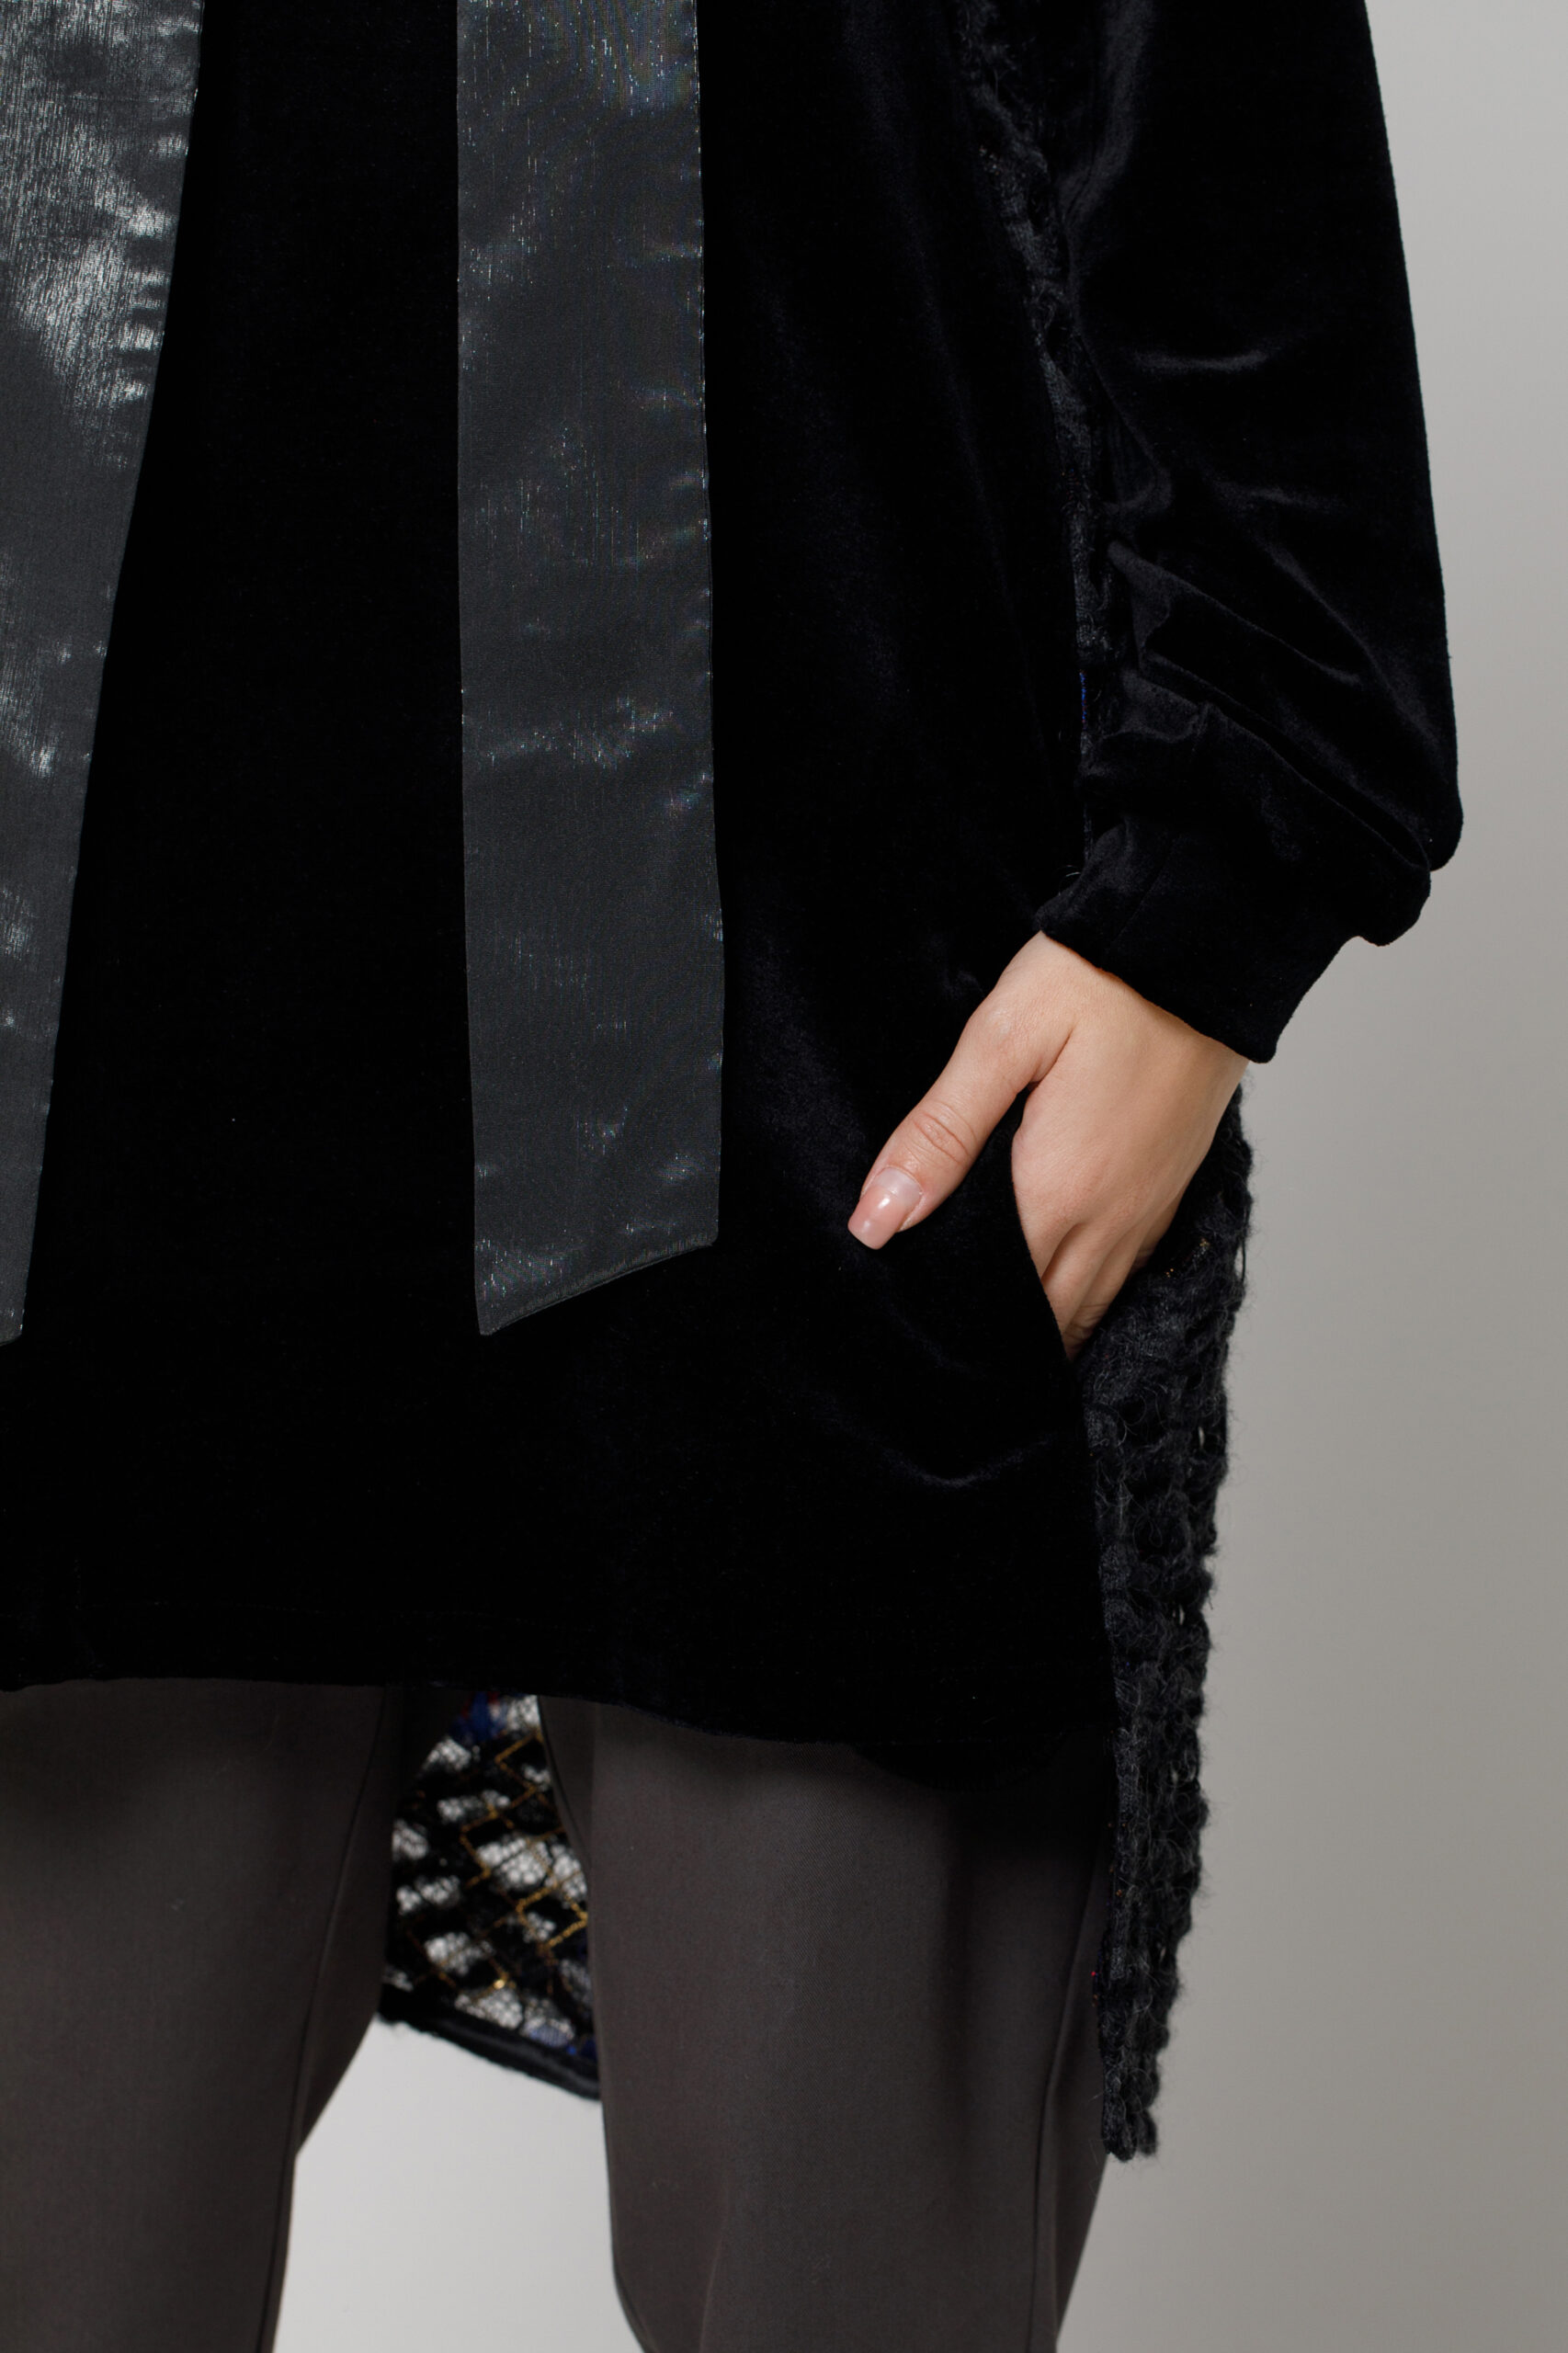 Hanorac ALARY din catifea neagra si tricot. Materiale naturale, design unicat, cu broderie si aplicatii handmade